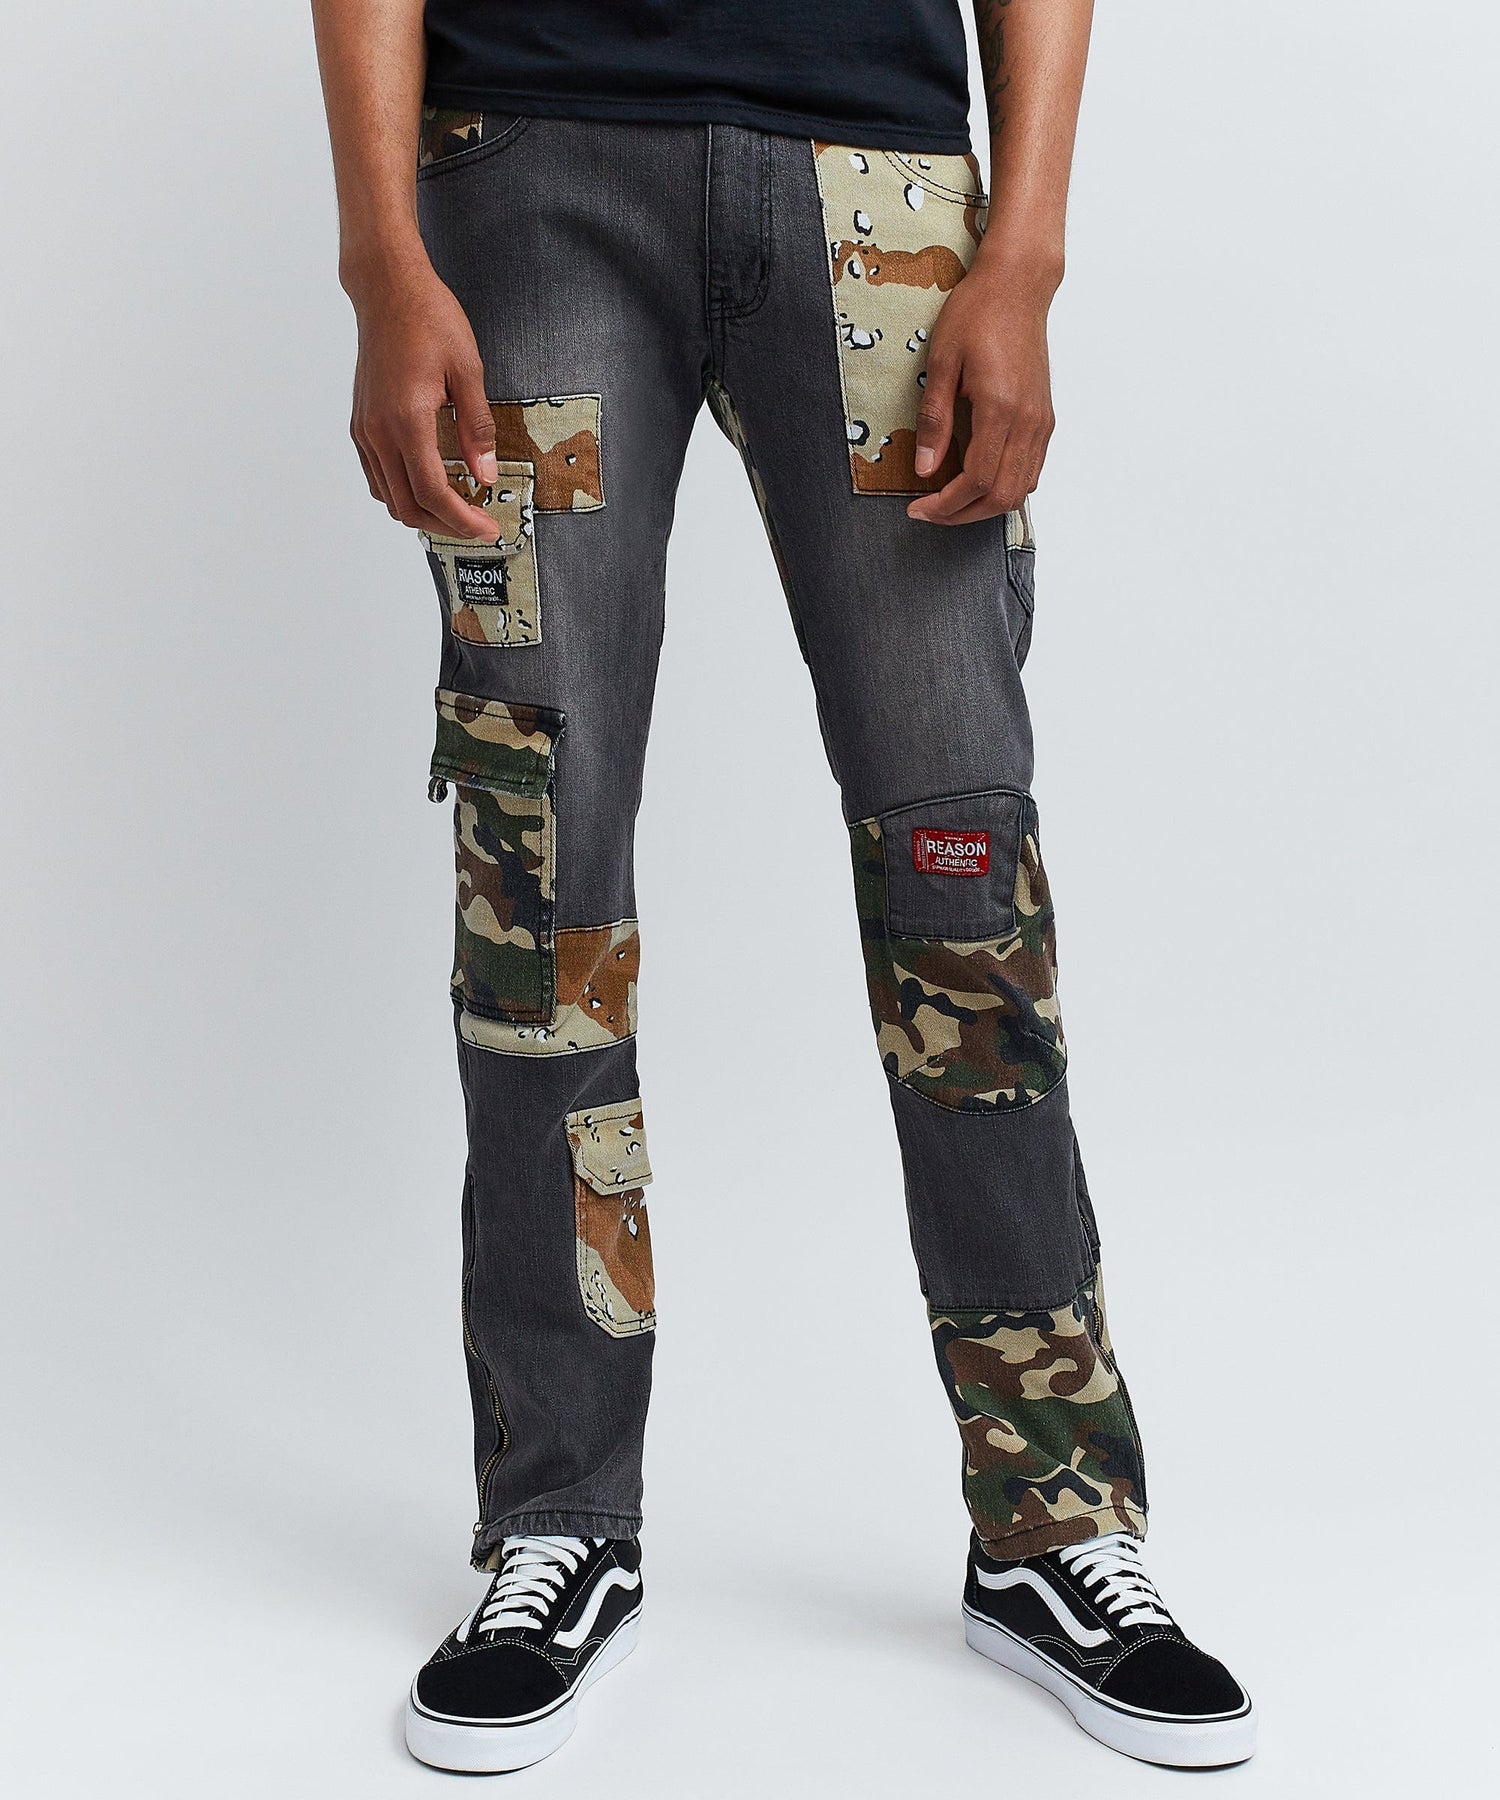 Reason Men's Blackout Side Zip Jeans